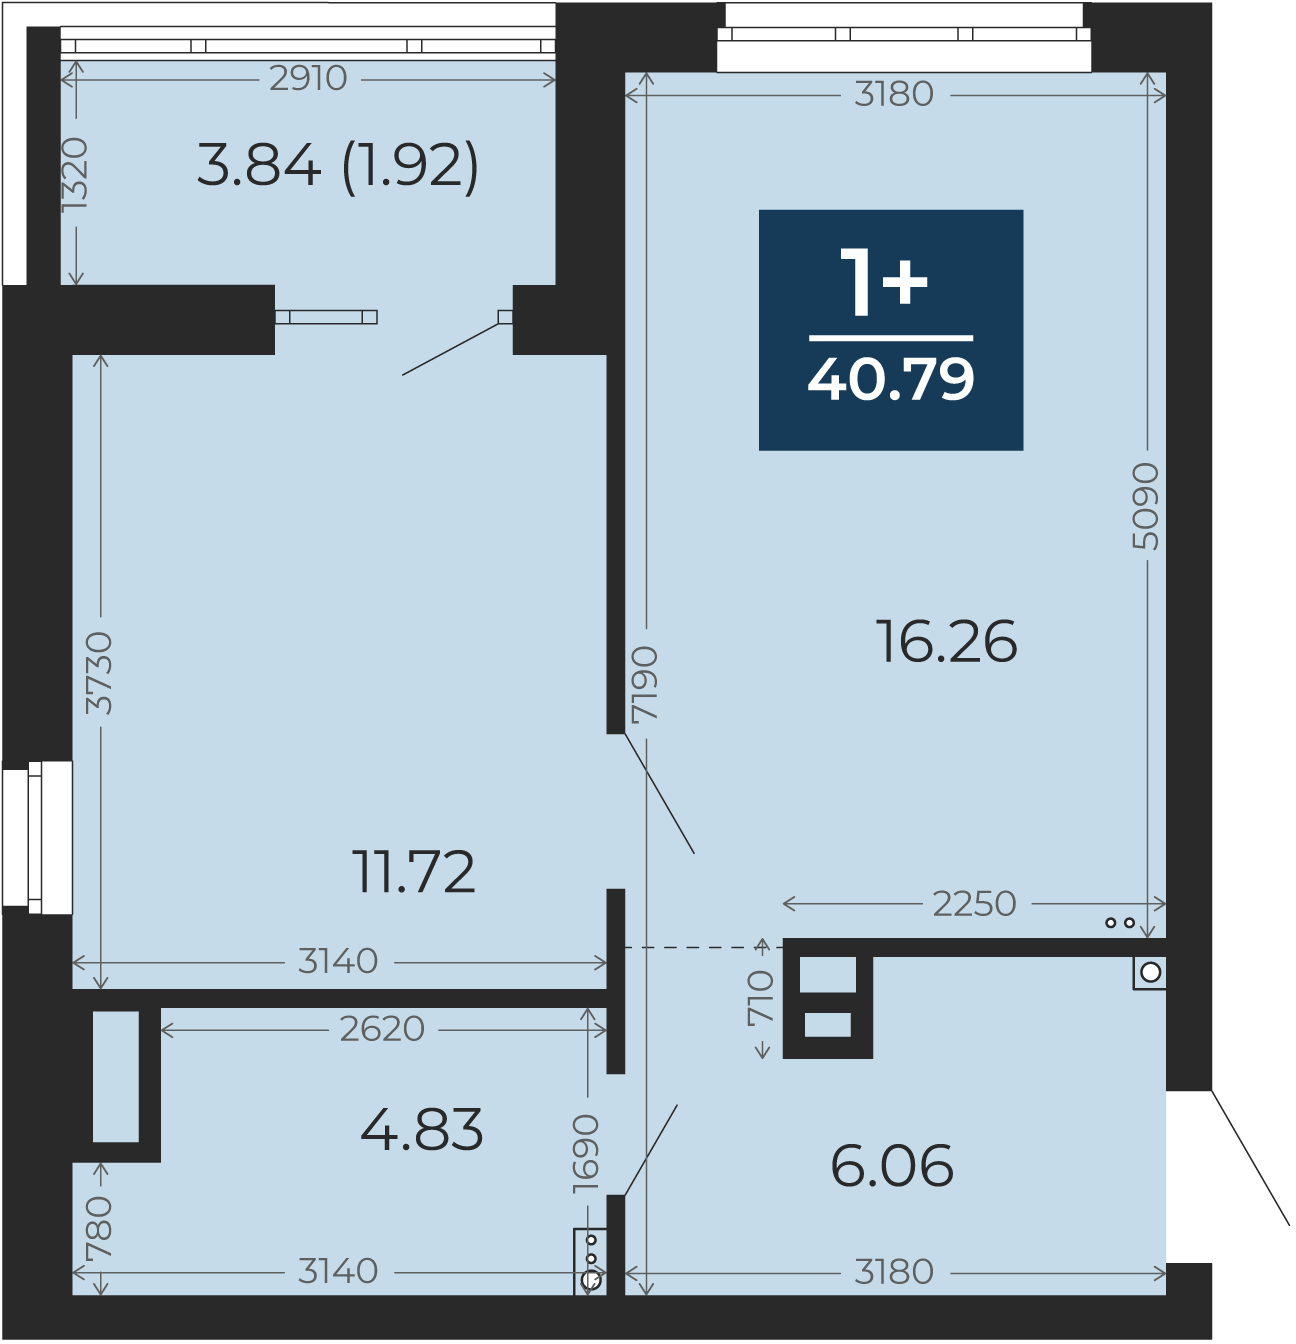 Квартира № 10, 1-комнатная, 40.79 кв. м, 2 этаж